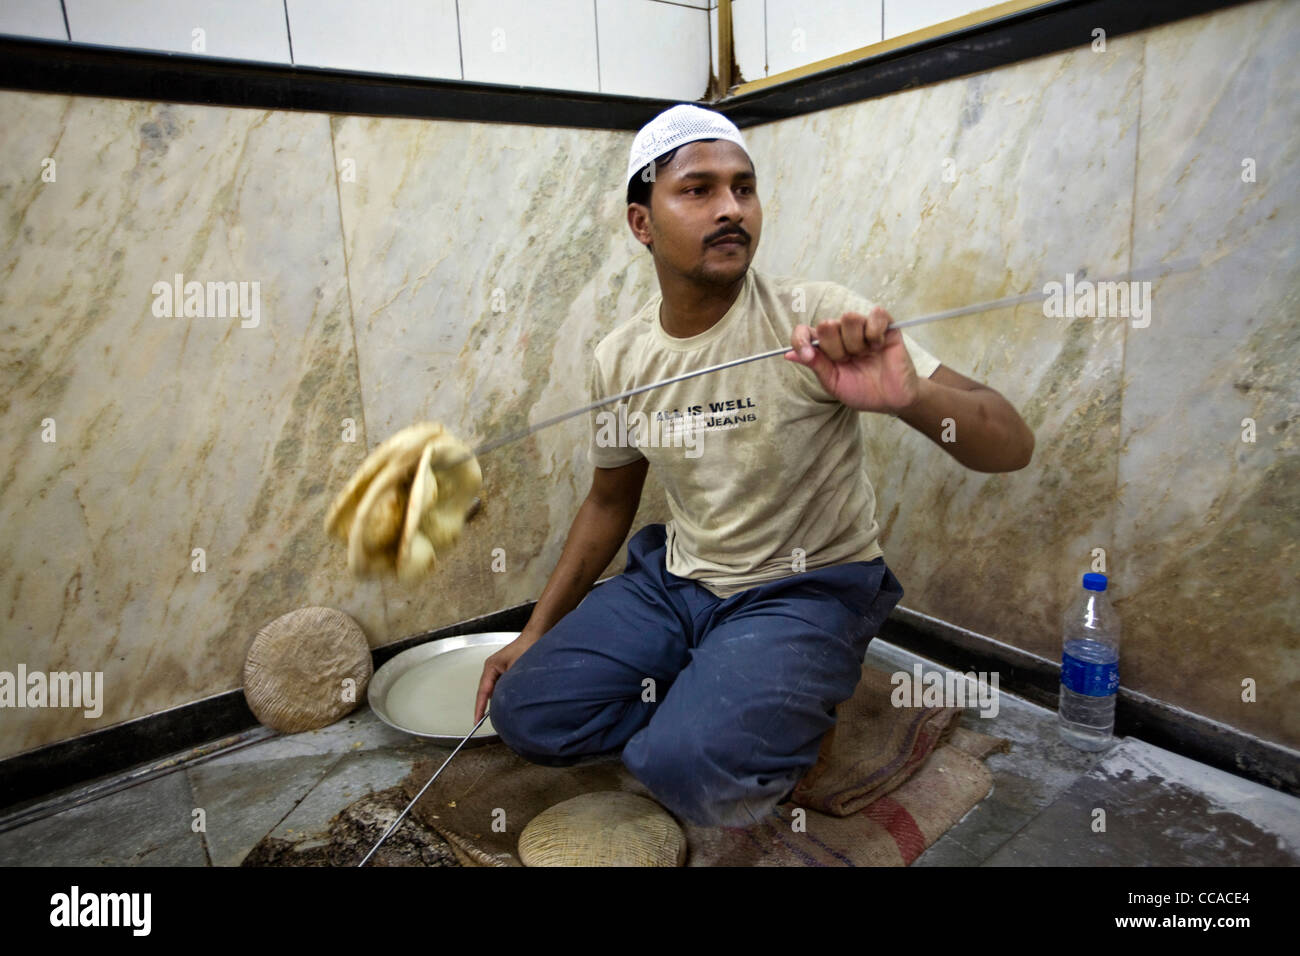 L M Rahman jette du pain naan frais du tandoor à un un serveur à Karim's Restaurant, Delhi, Inde Banque D'Images